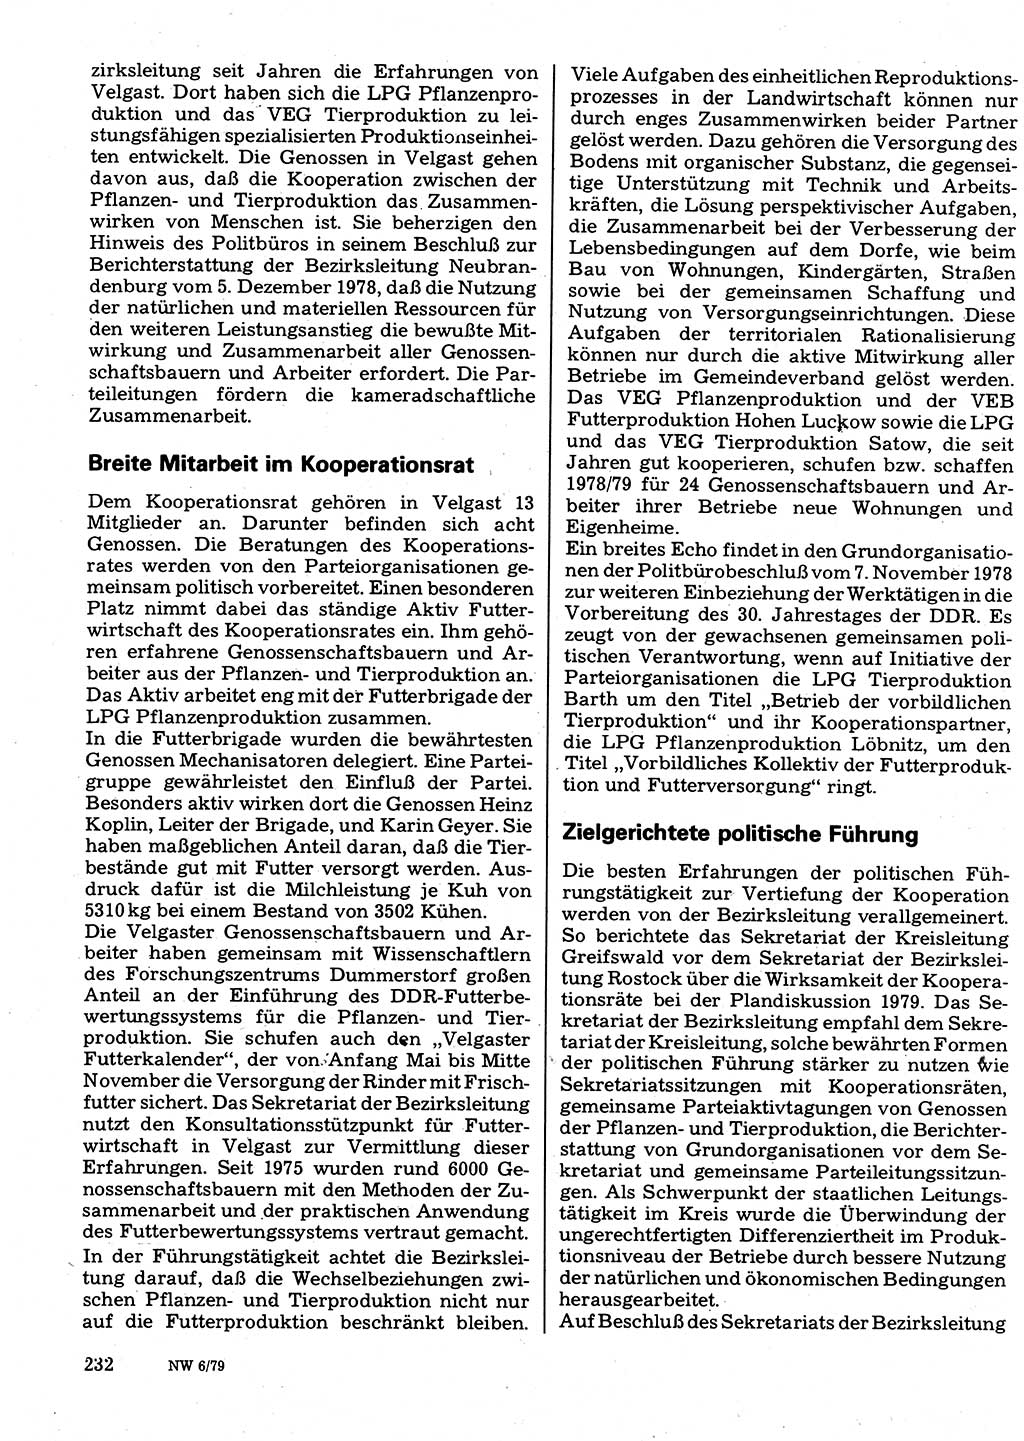 Neuer Weg (NW), Organ des Zentralkomitees (ZK) der SED (Sozialistische Einheitspartei Deutschlands) für Fragen des Parteilebens, 34. Jahrgang [Deutsche Demokratische Republik (DDR)] 1979, Seite 232 (NW ZK SED DDR 1979, S. 232)